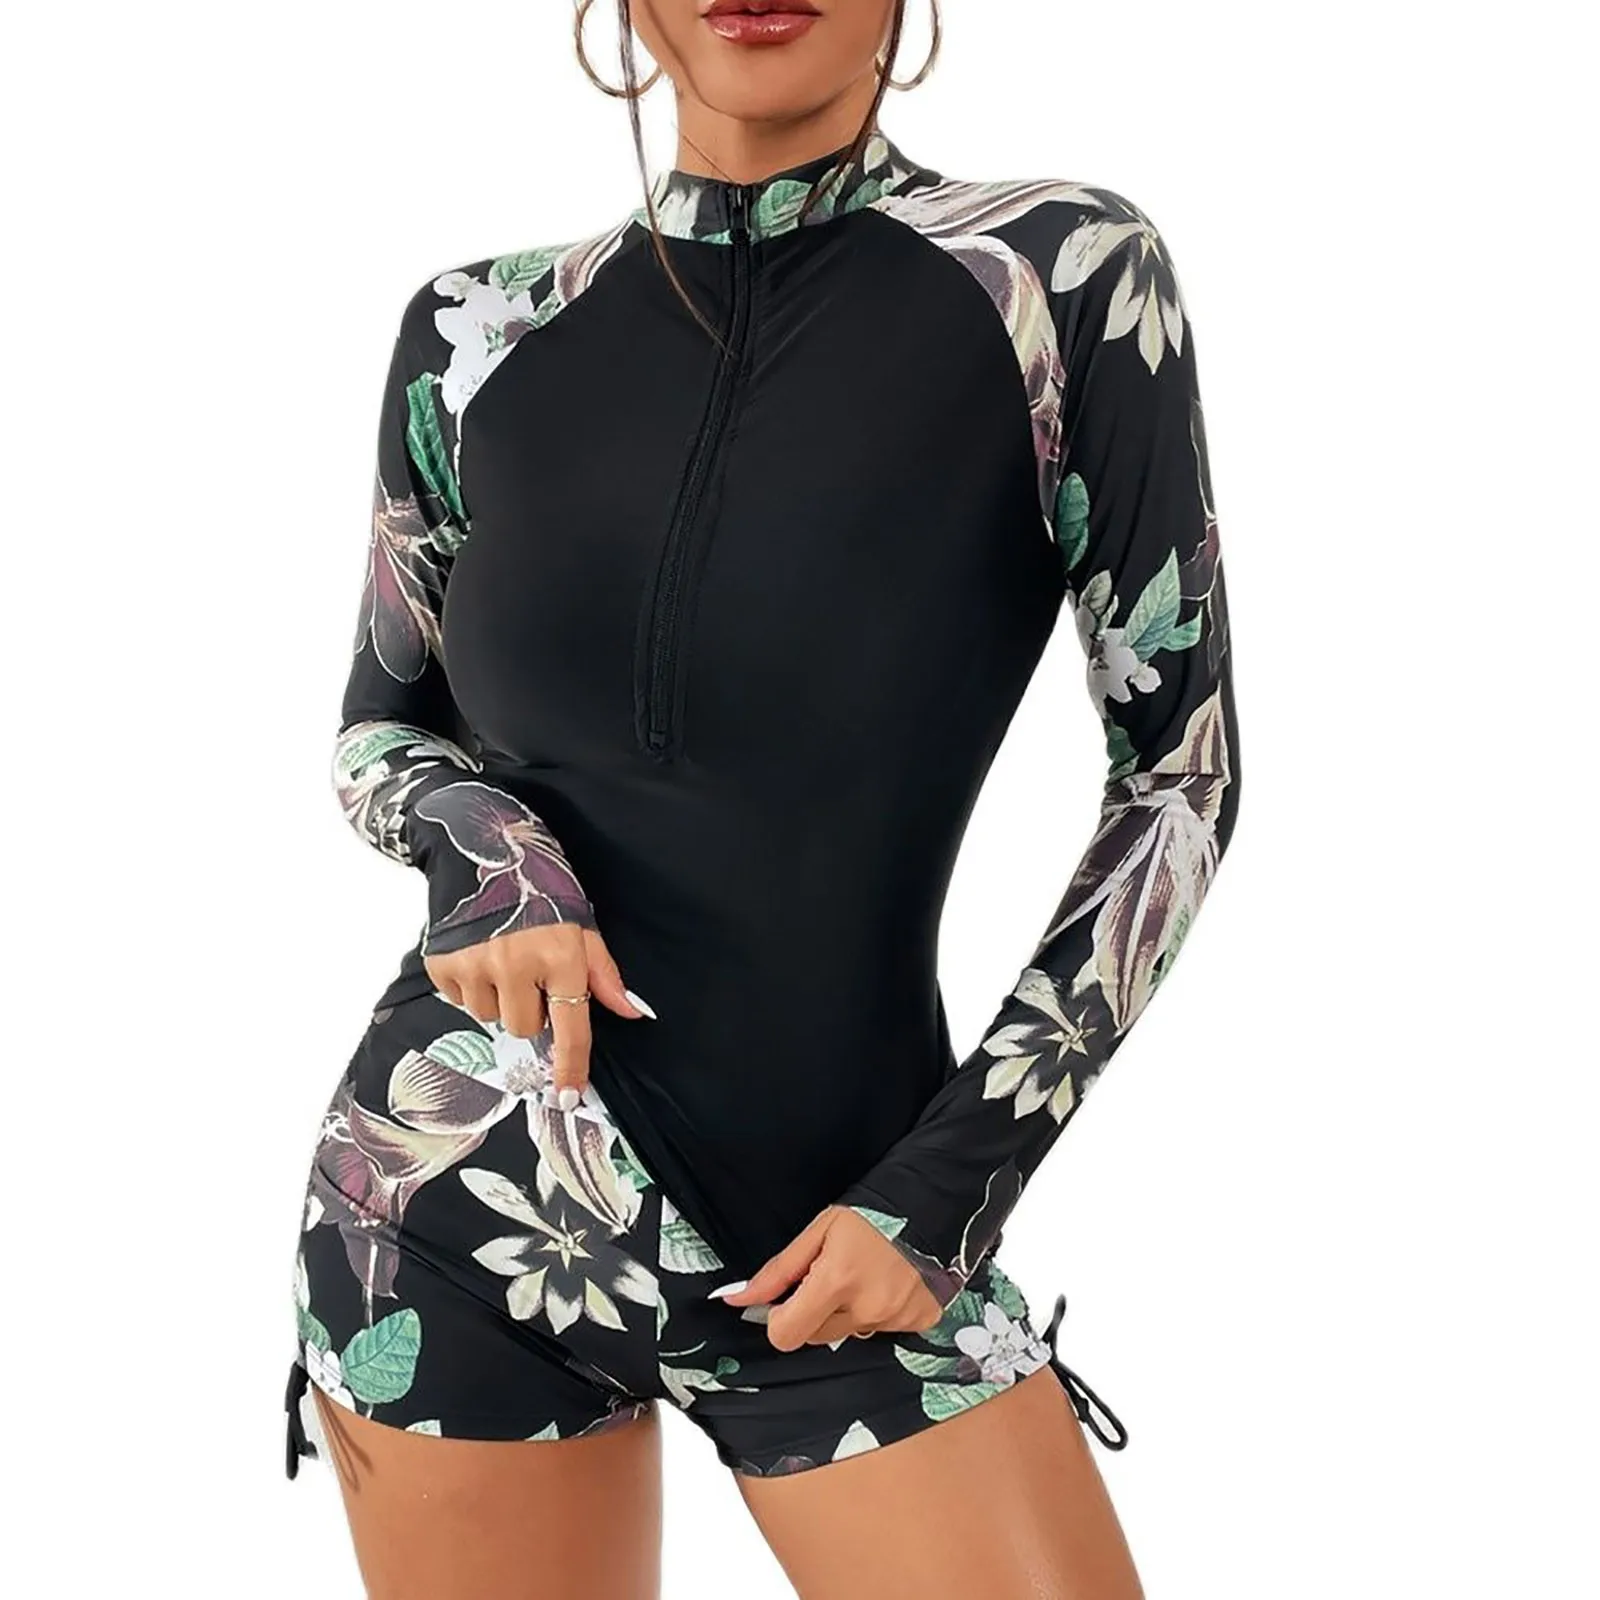 

Women's One-Piece Athletic Racerback Swimsuit Slimming Bathing Suit Deep V Zipper Closure Floral купальники женские 수영복 여자